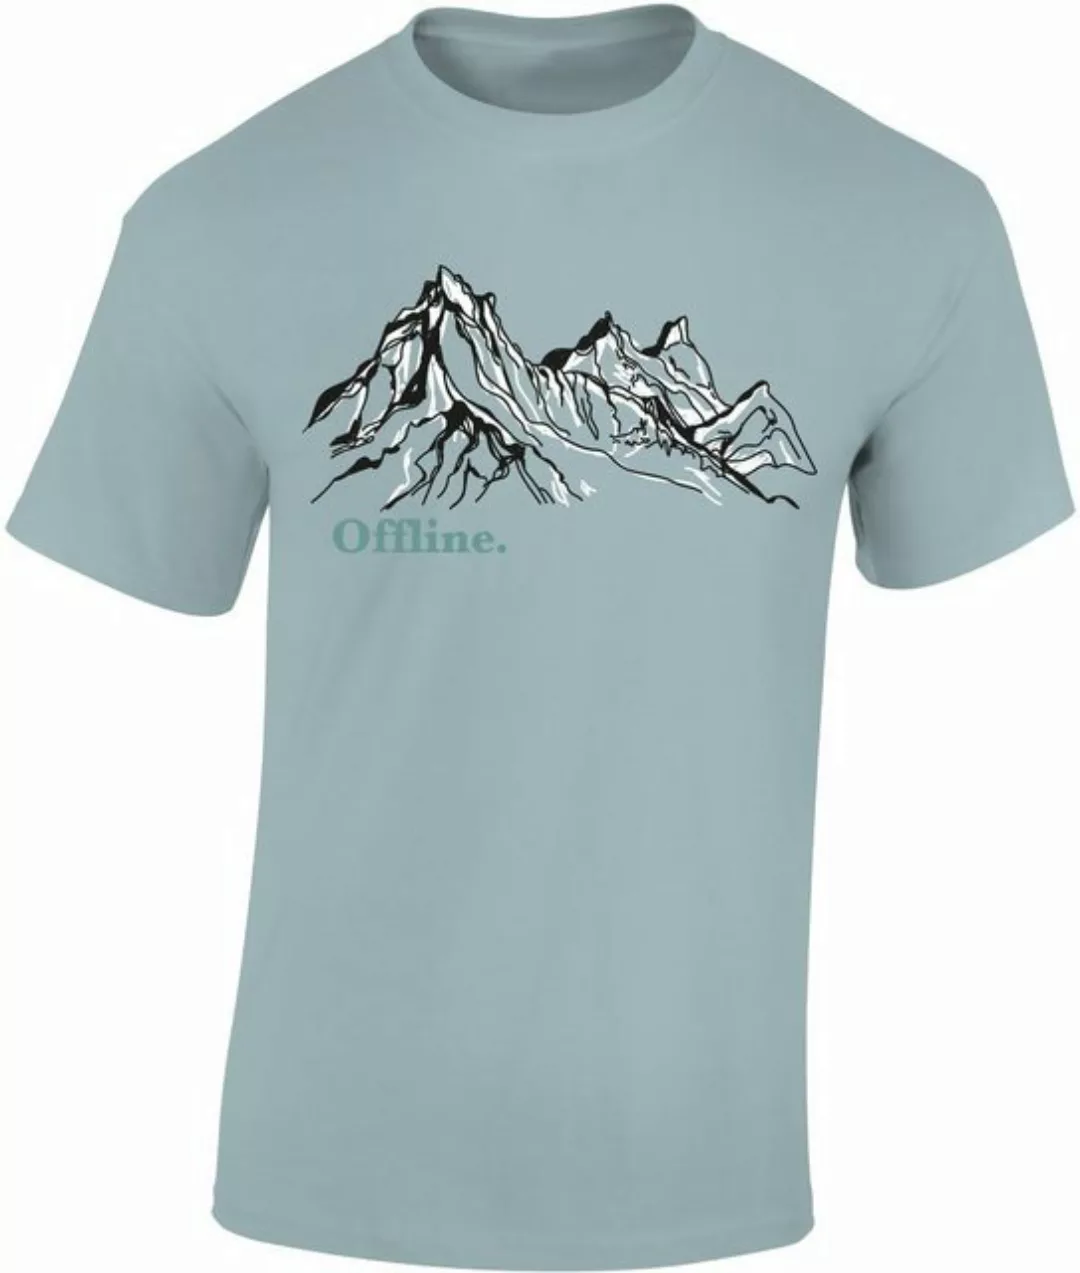 Baddery Print-Shirt Wander Tshirt : "Offline" - Kletter T-Shirt für Wanderf günstig online kaufen